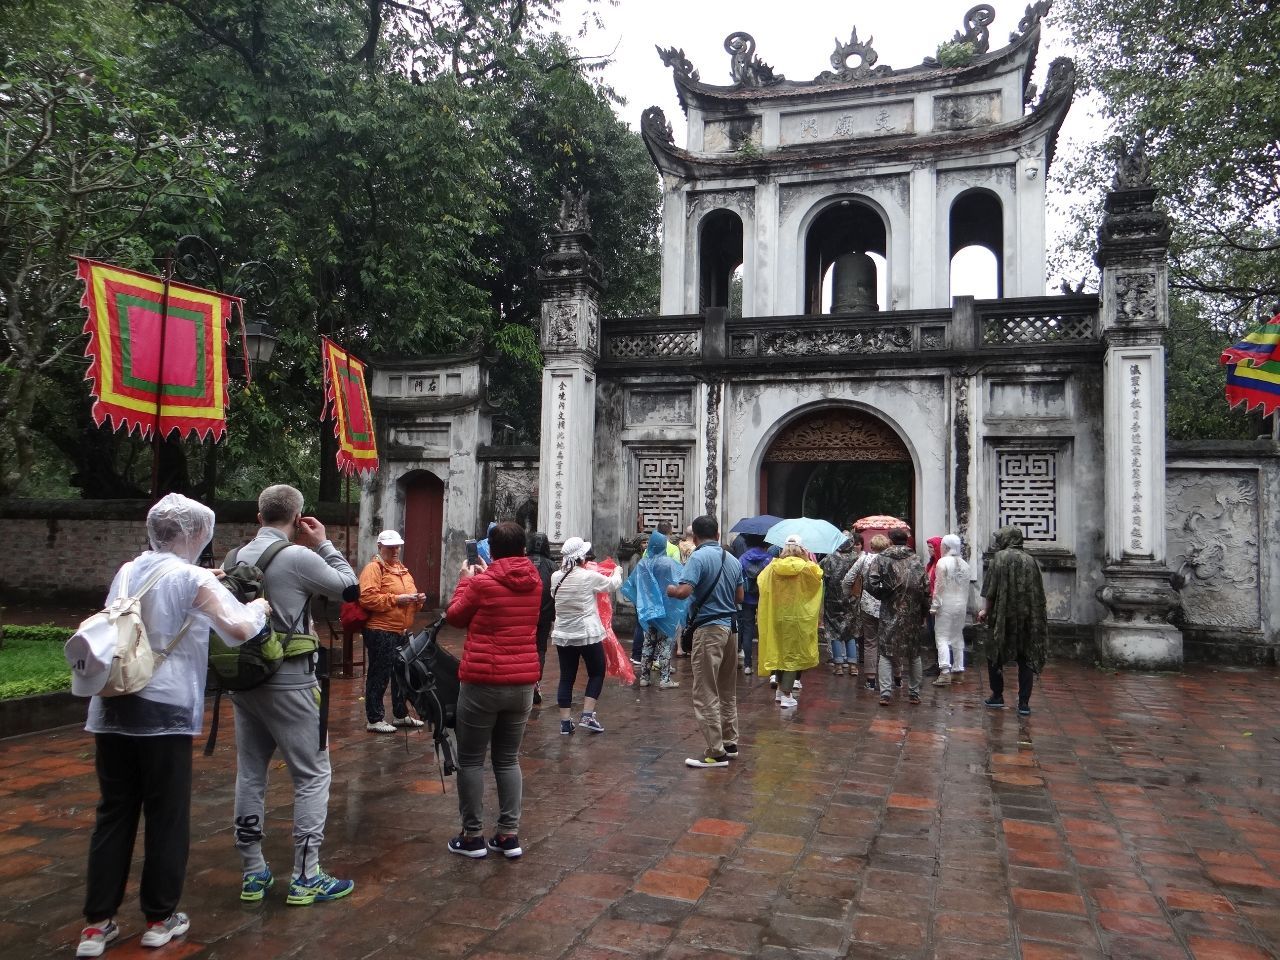 Одна из уникальных достопримечательностей Вьетнама, возведенная в 1070 году и посвященная Конфуцию - Храм литературы.  - Фотоотчет Вьетнам 2019. Часть 1 - день 1